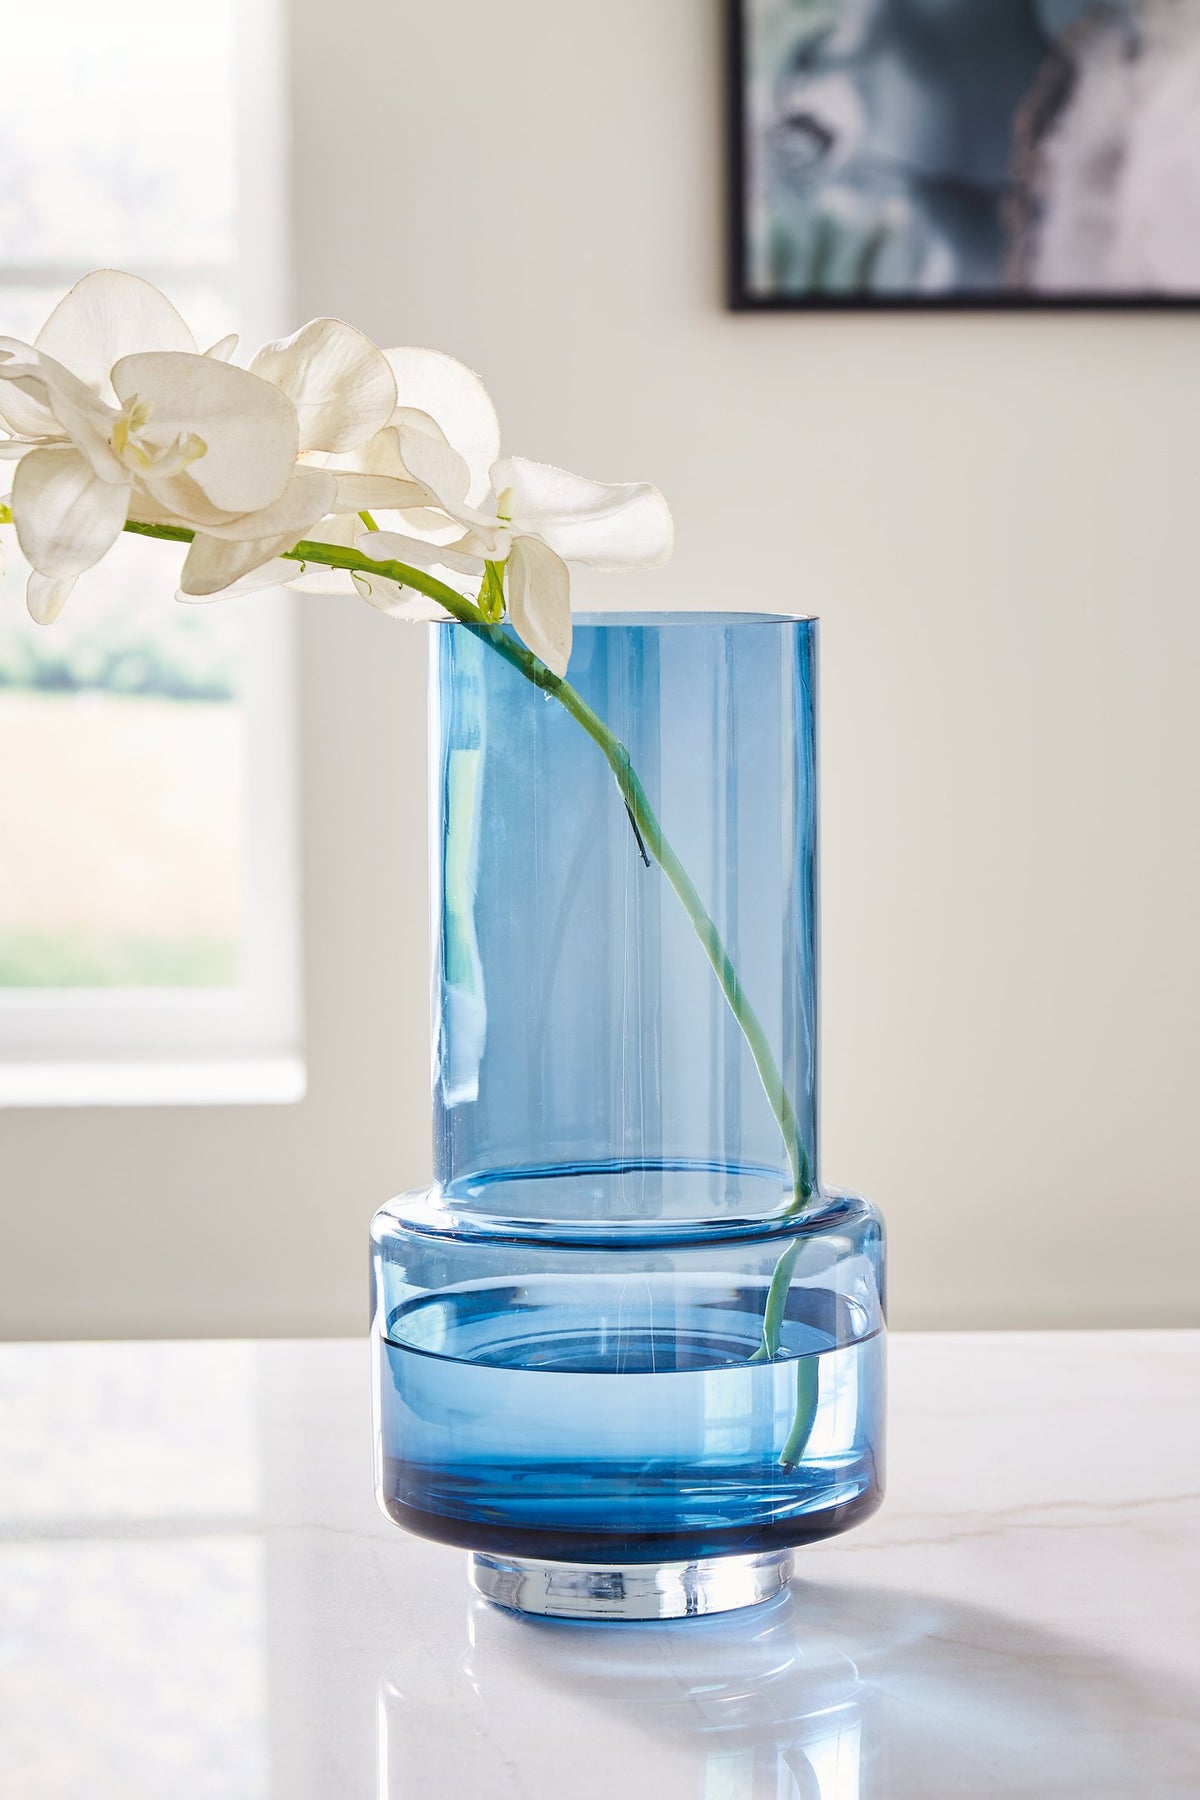 Bealen Vase - Half Price Furniture